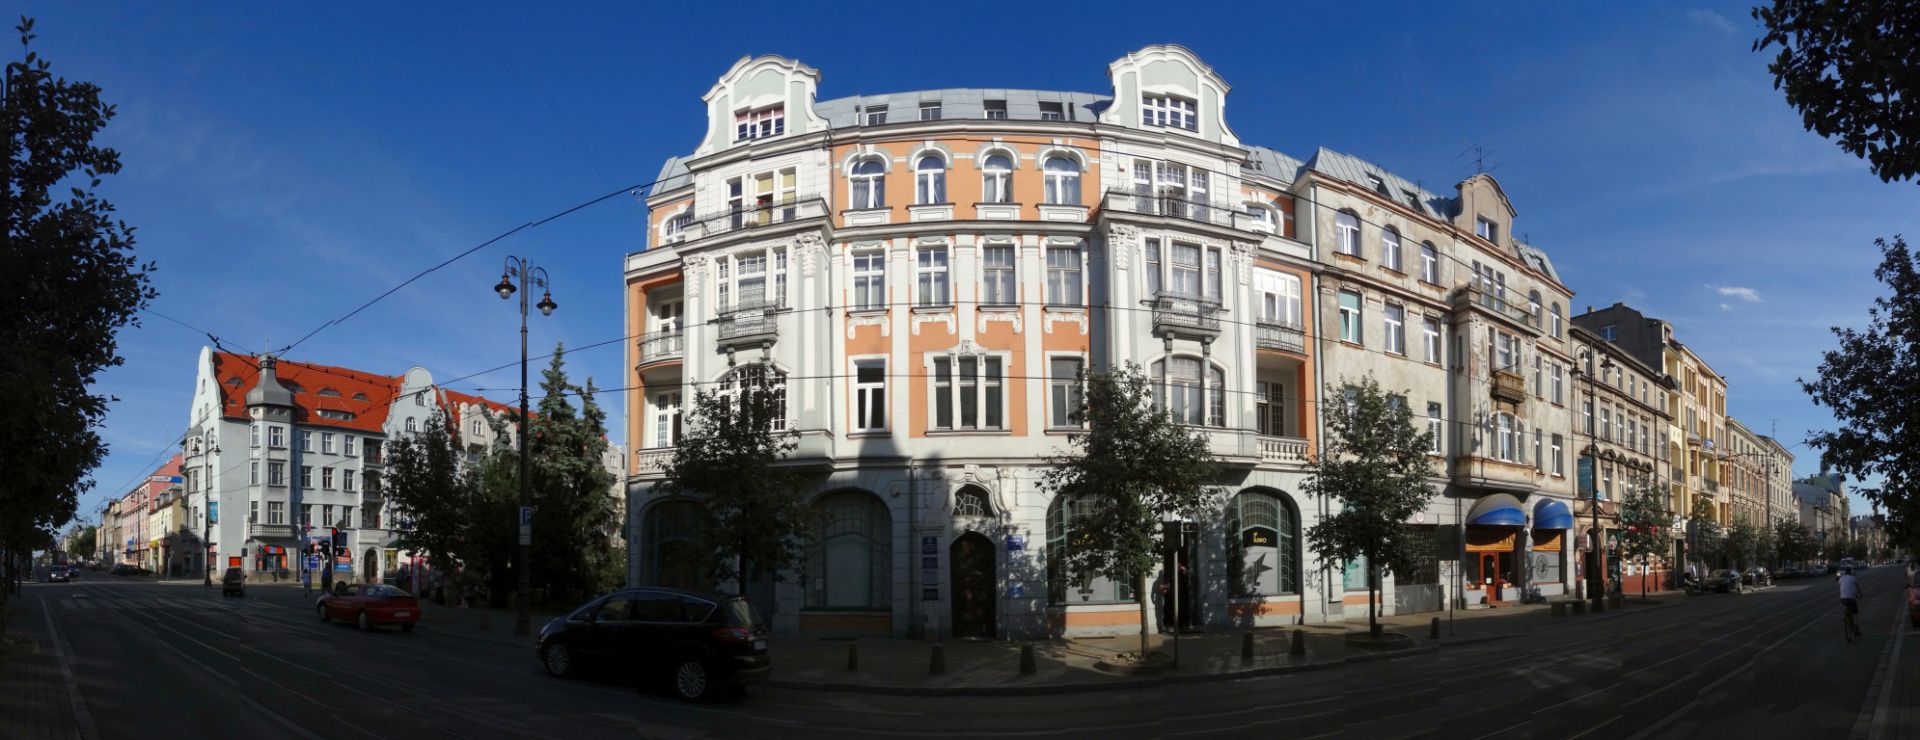 Eduard Schulz's Tenement House